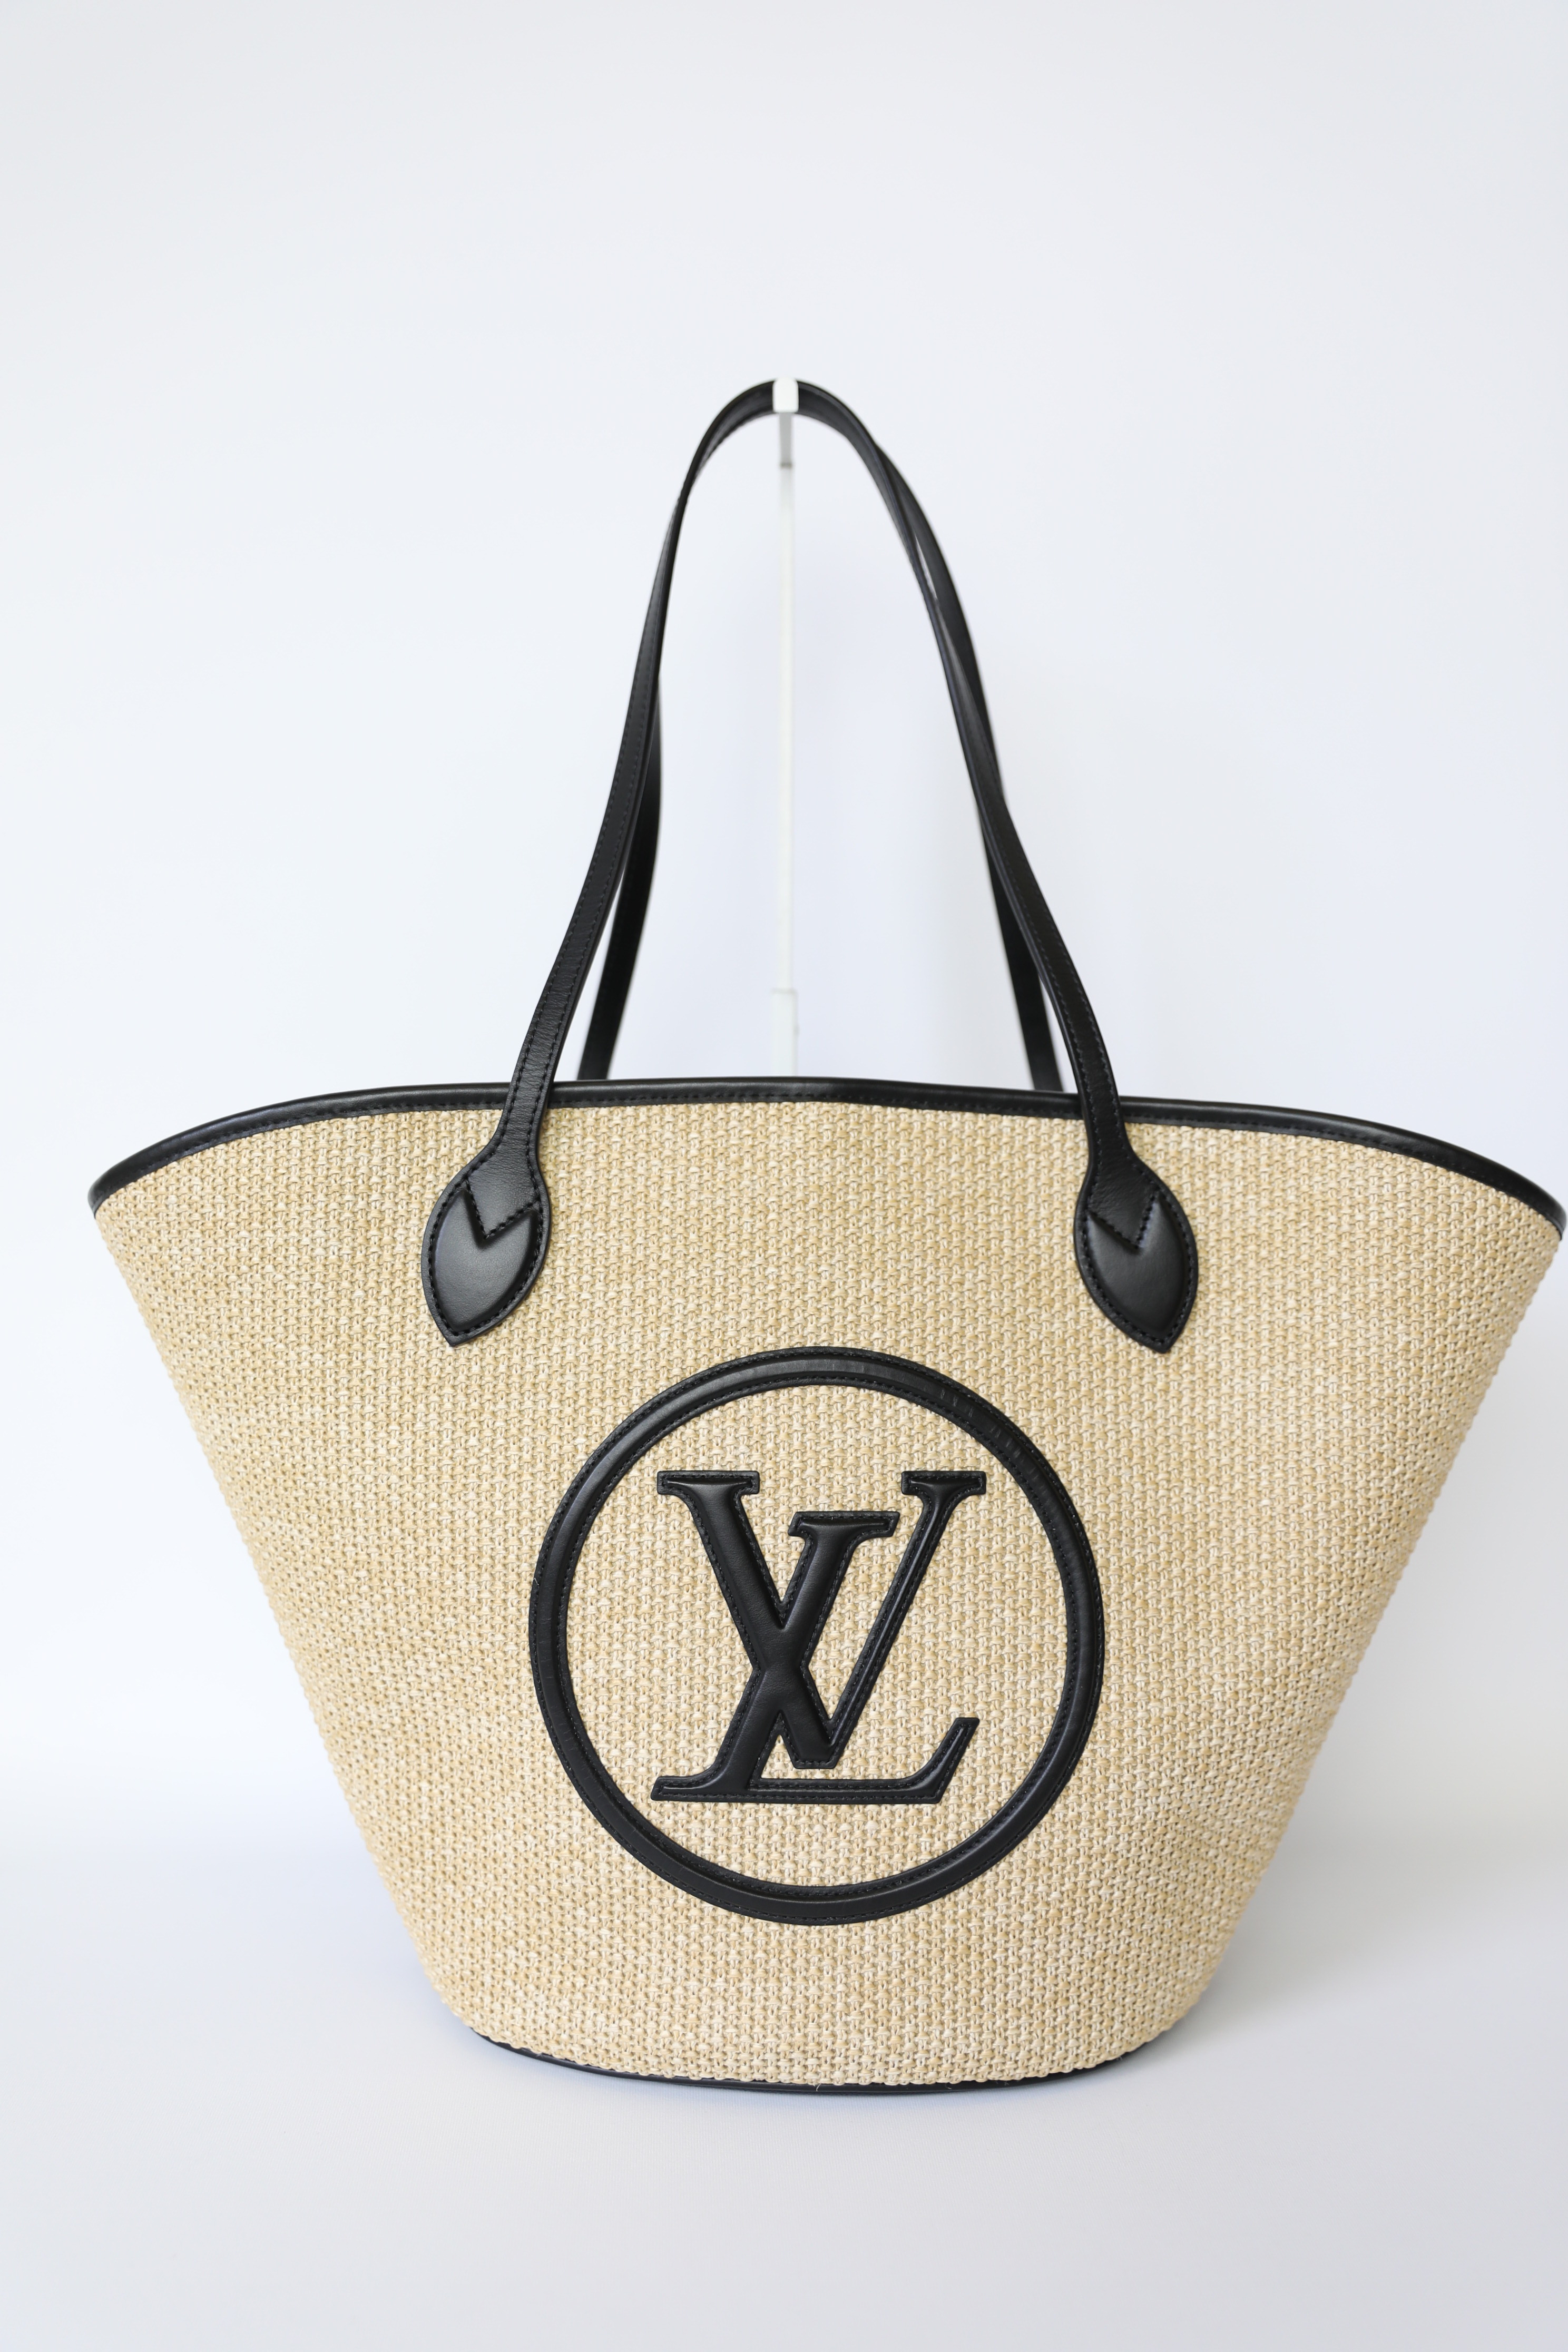 Louis Vuitton Saint Jacques NM Handbag Raffia and Leather